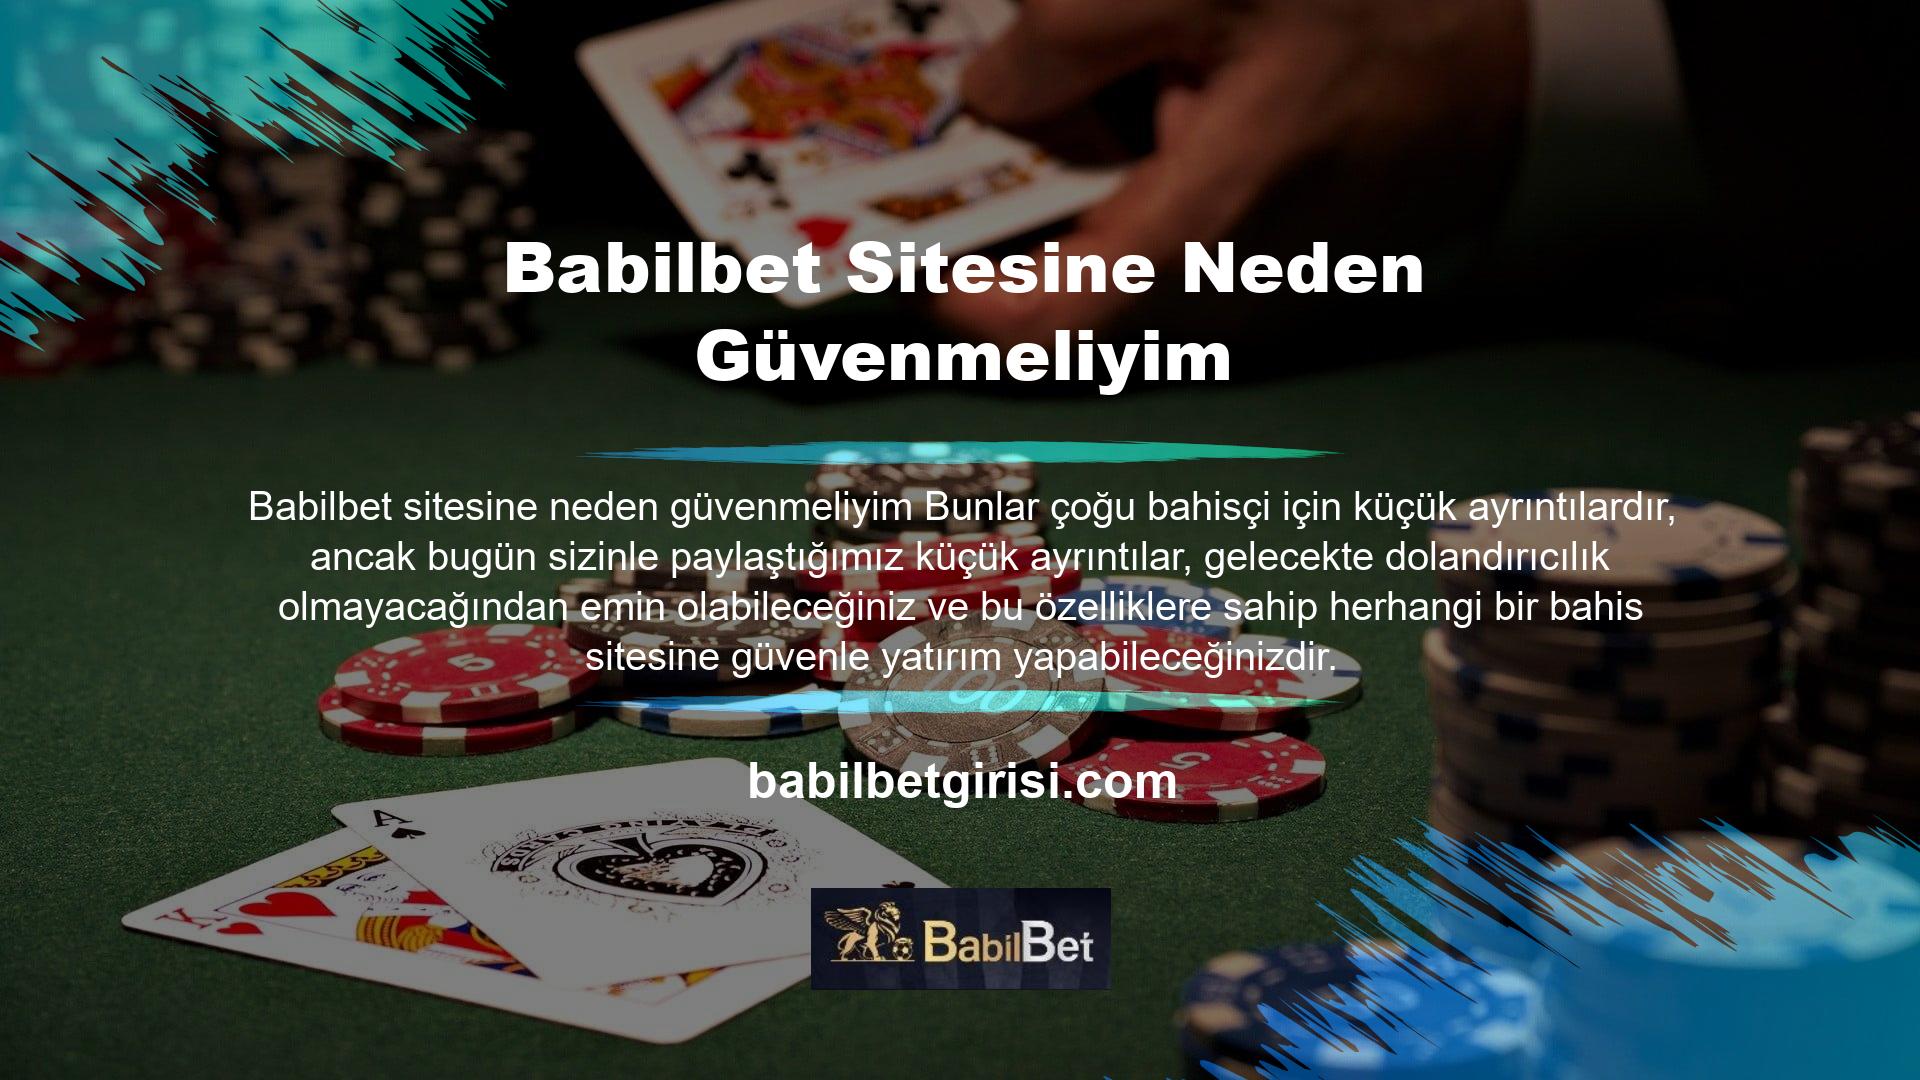   Babilbet sitesine neden güvenmeliyim Gerçek bir casino sitesini hileli bir siteden ayıran ilk kural, sitenin bir şirket adı altında işletilmesidir